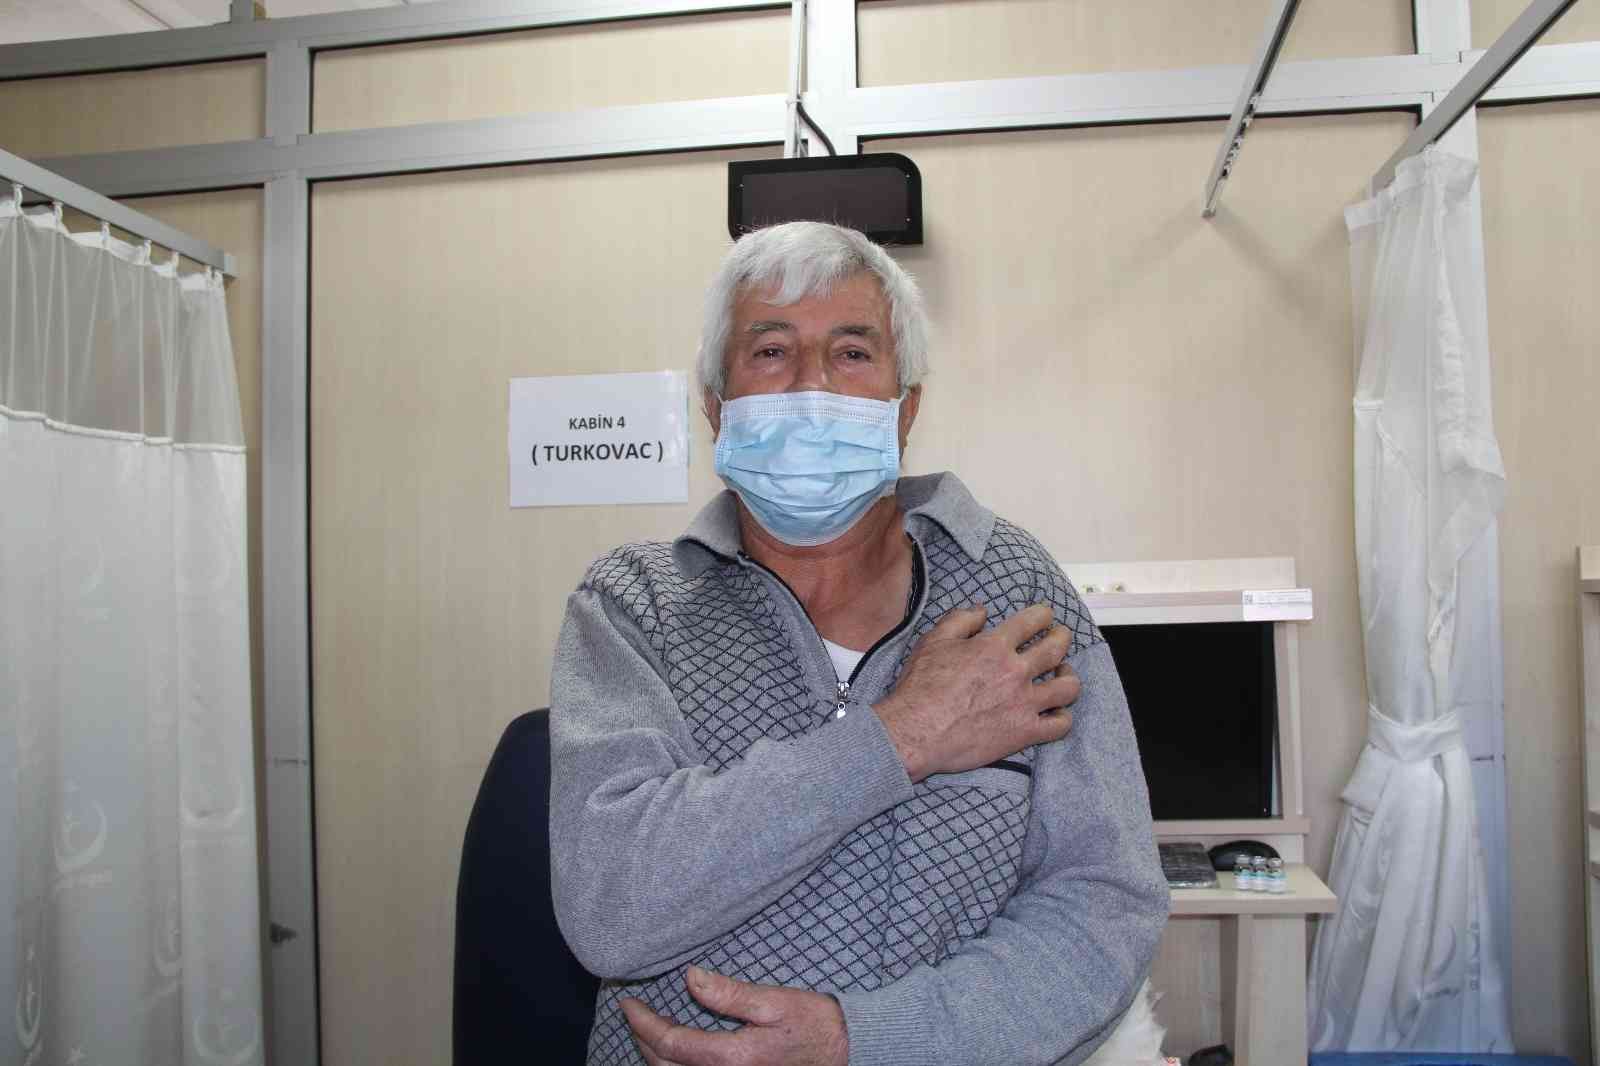 İzmir’de Turkovac aşısı uygulanmaya başladı #izmir